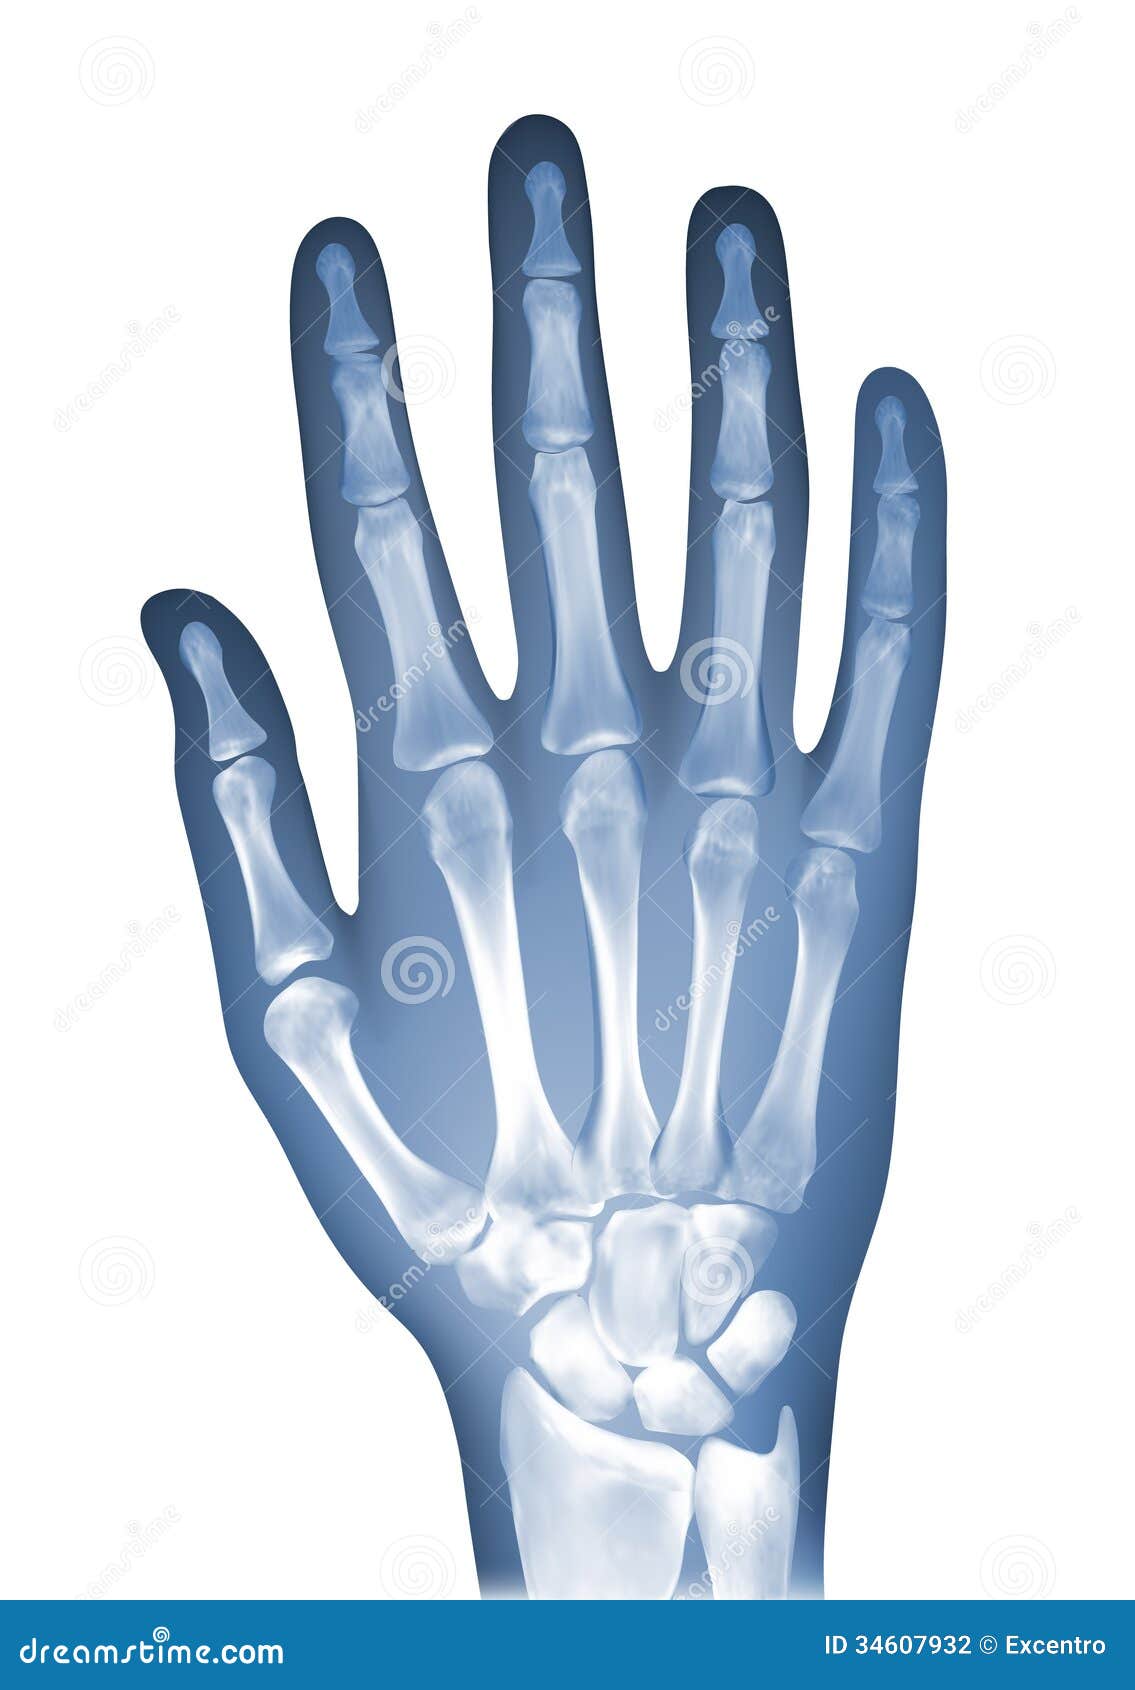 hand x ray clipart - photo #31